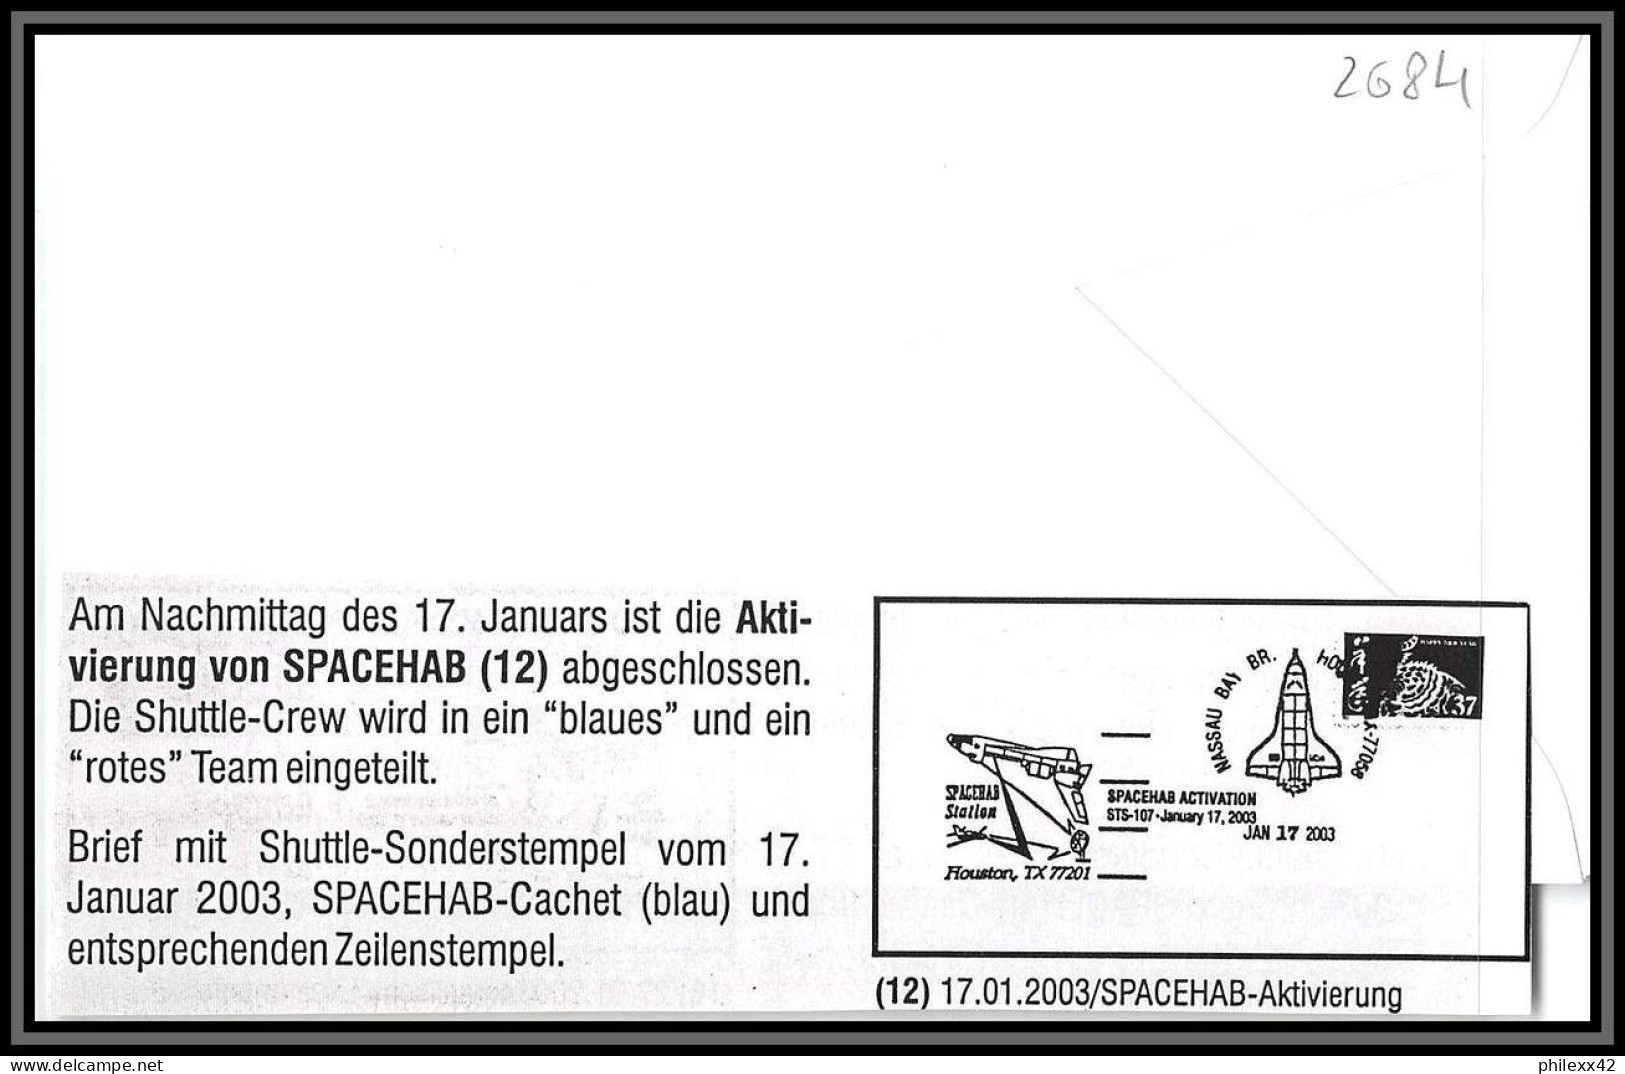 2684 Espace (space Raumfahrt) Lettre (cover) USA- Sts-107 Columbia Shuttle (navette) SPACEHAB Activation 17/1/2003  - Etats-Unis